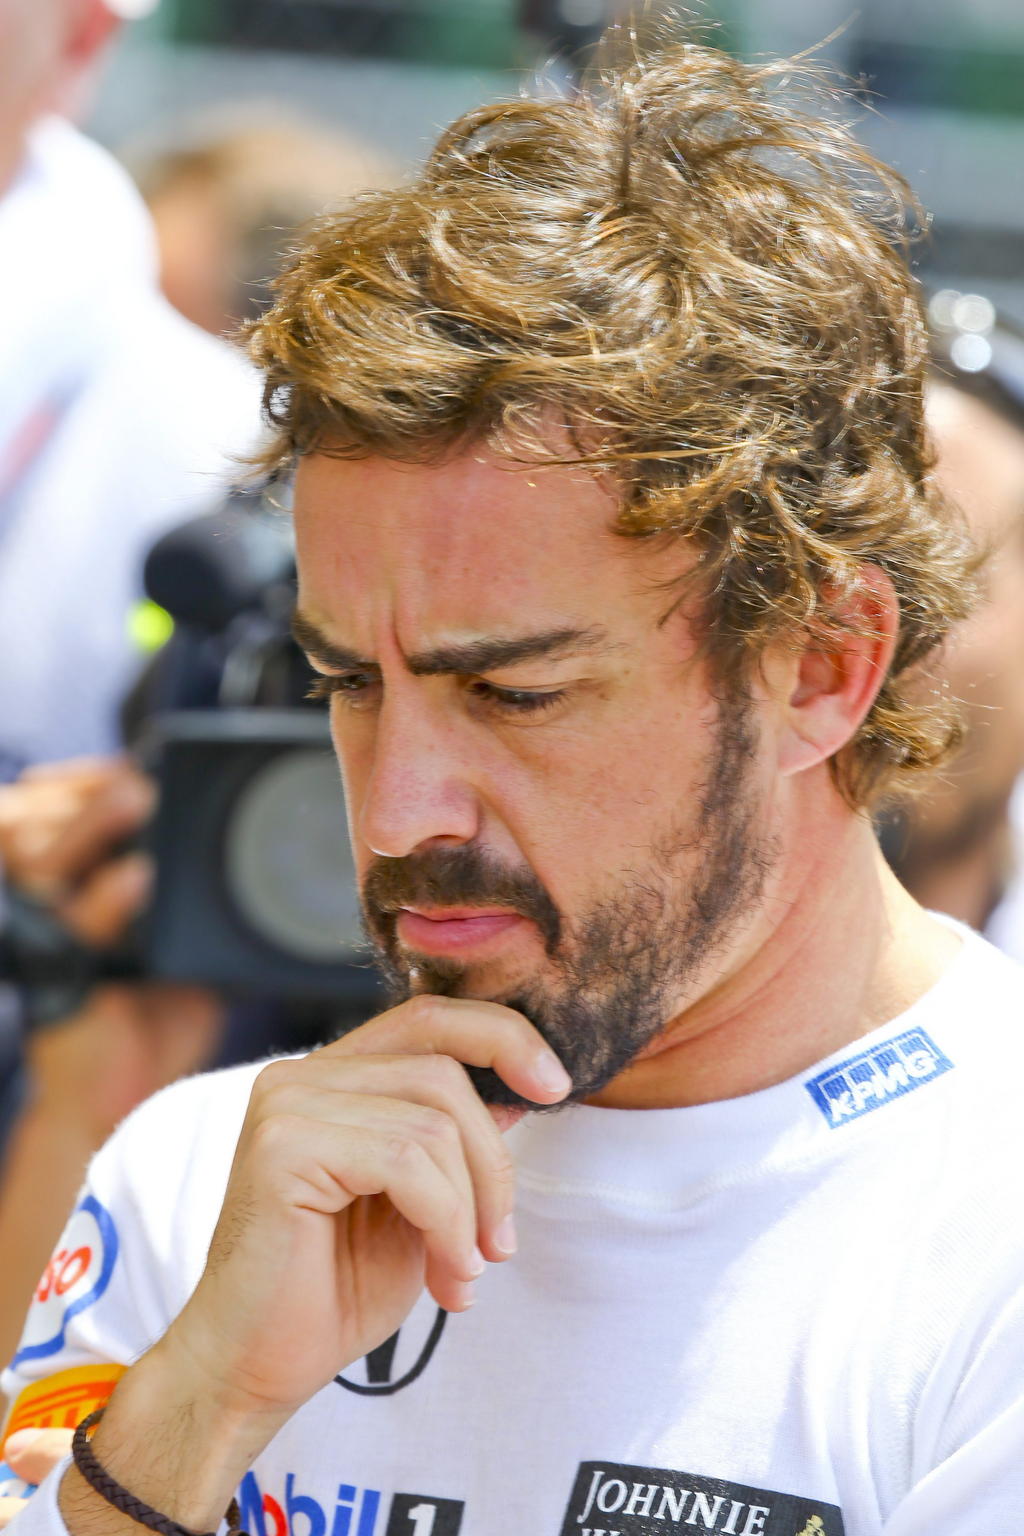 'A ver si en la siguiente carrera acumulamos más vueltas y seguimos aprendiendo. Creo que el de hoy ha sido un buen test, comentó Alonso al término de su participación. (EFE)